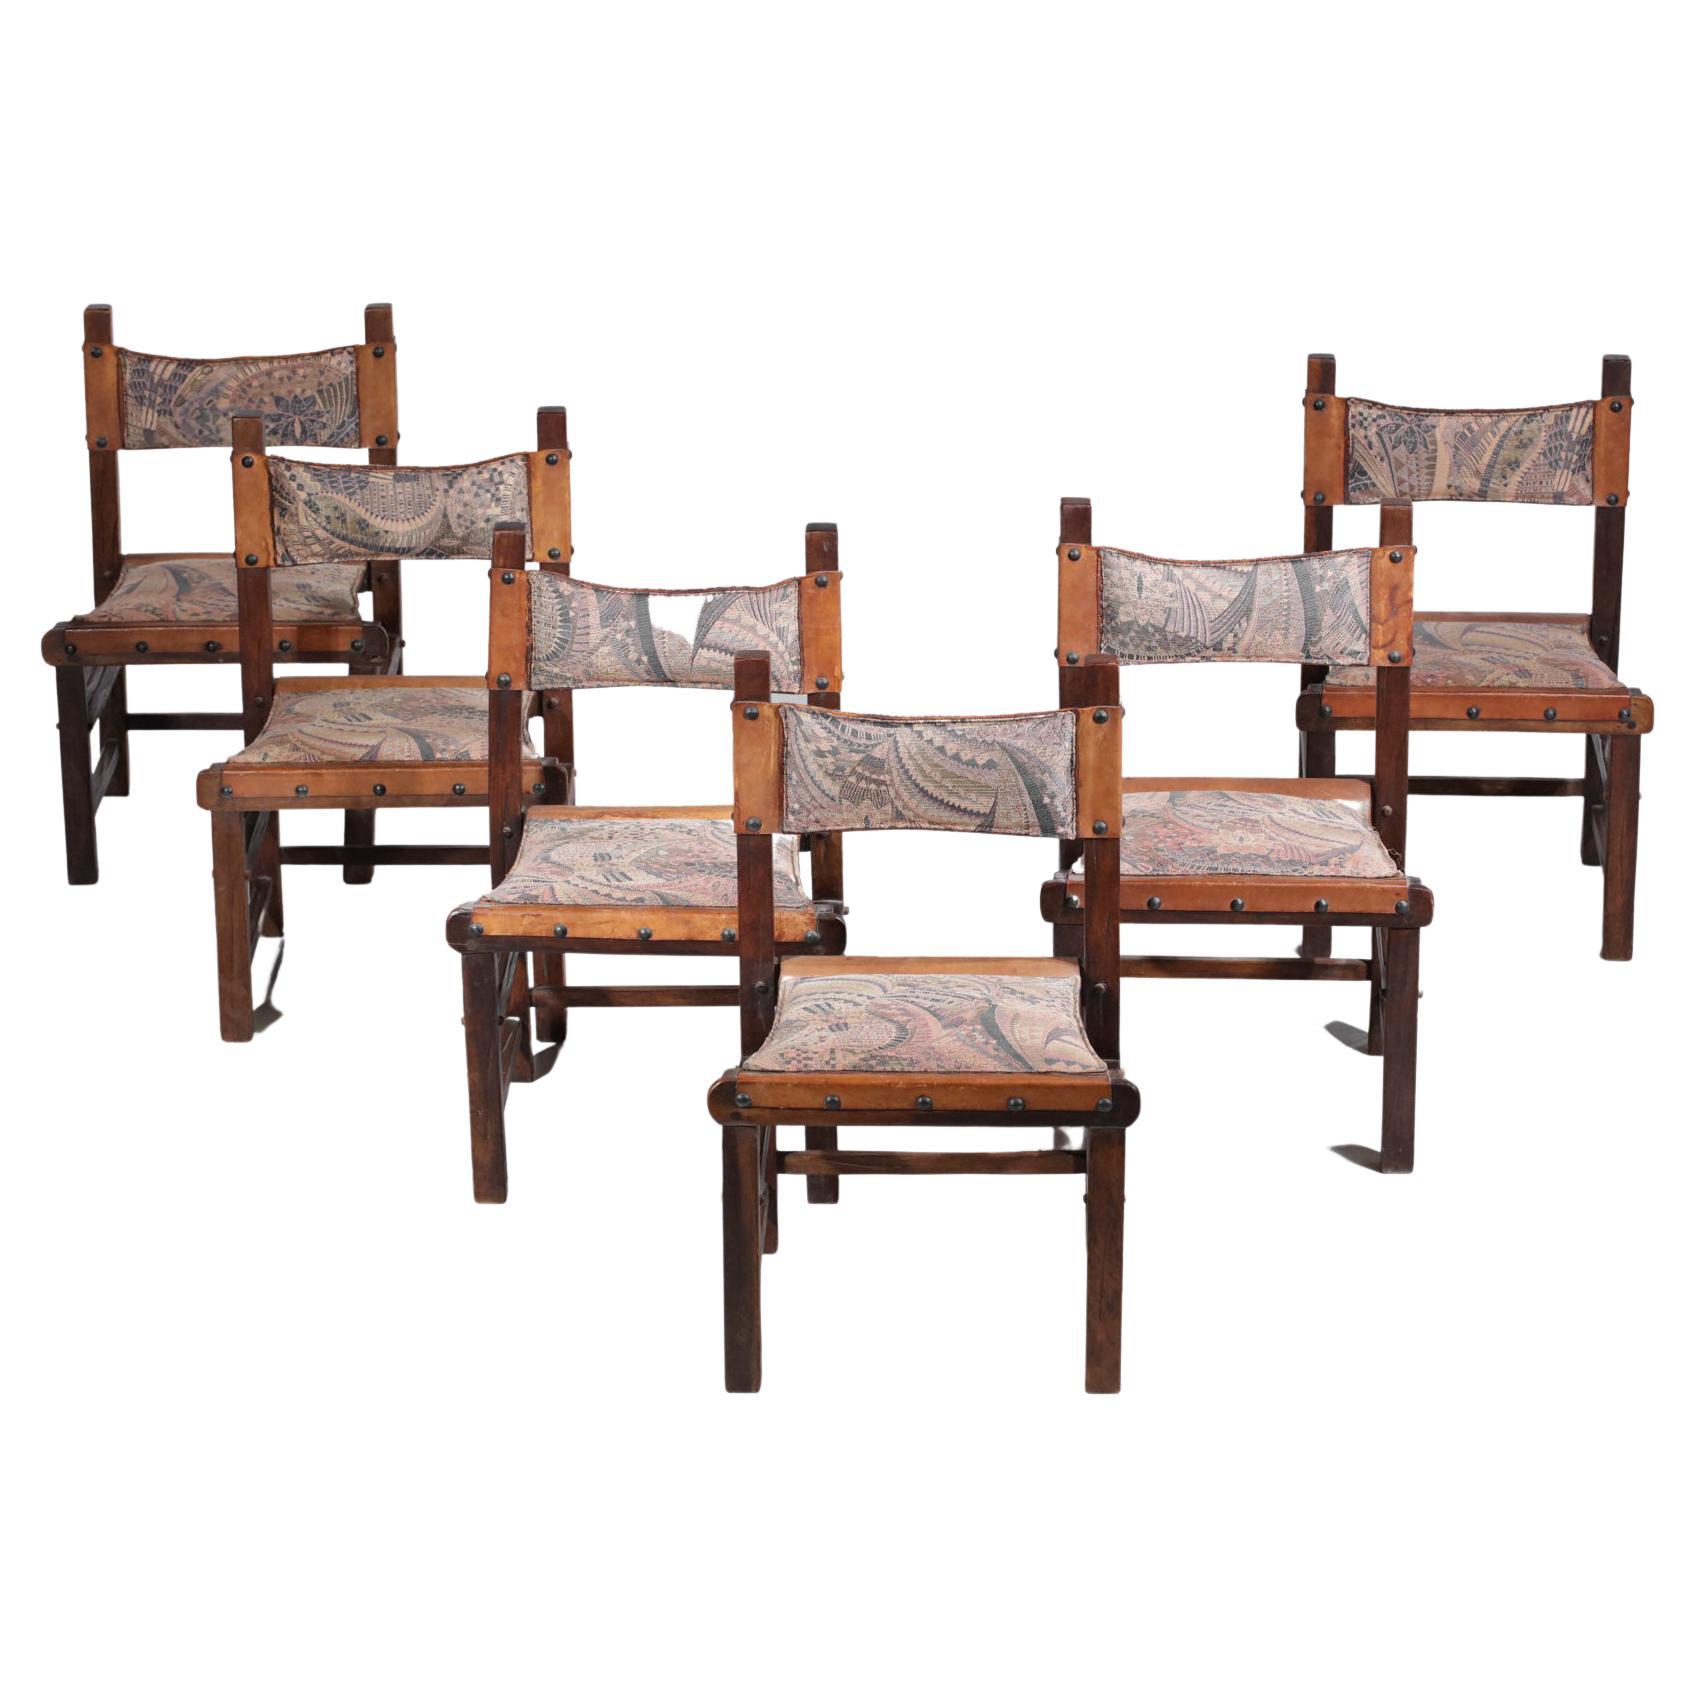 Ensemble de six chaises brésiliennes des années 60. Structure en bois massif, dossier et assise en cuir cognac recouvert d'un tissu à motifs géométriques (acheté en état, tissu déjà présent sur les assises depuis longtemps au vu des traces